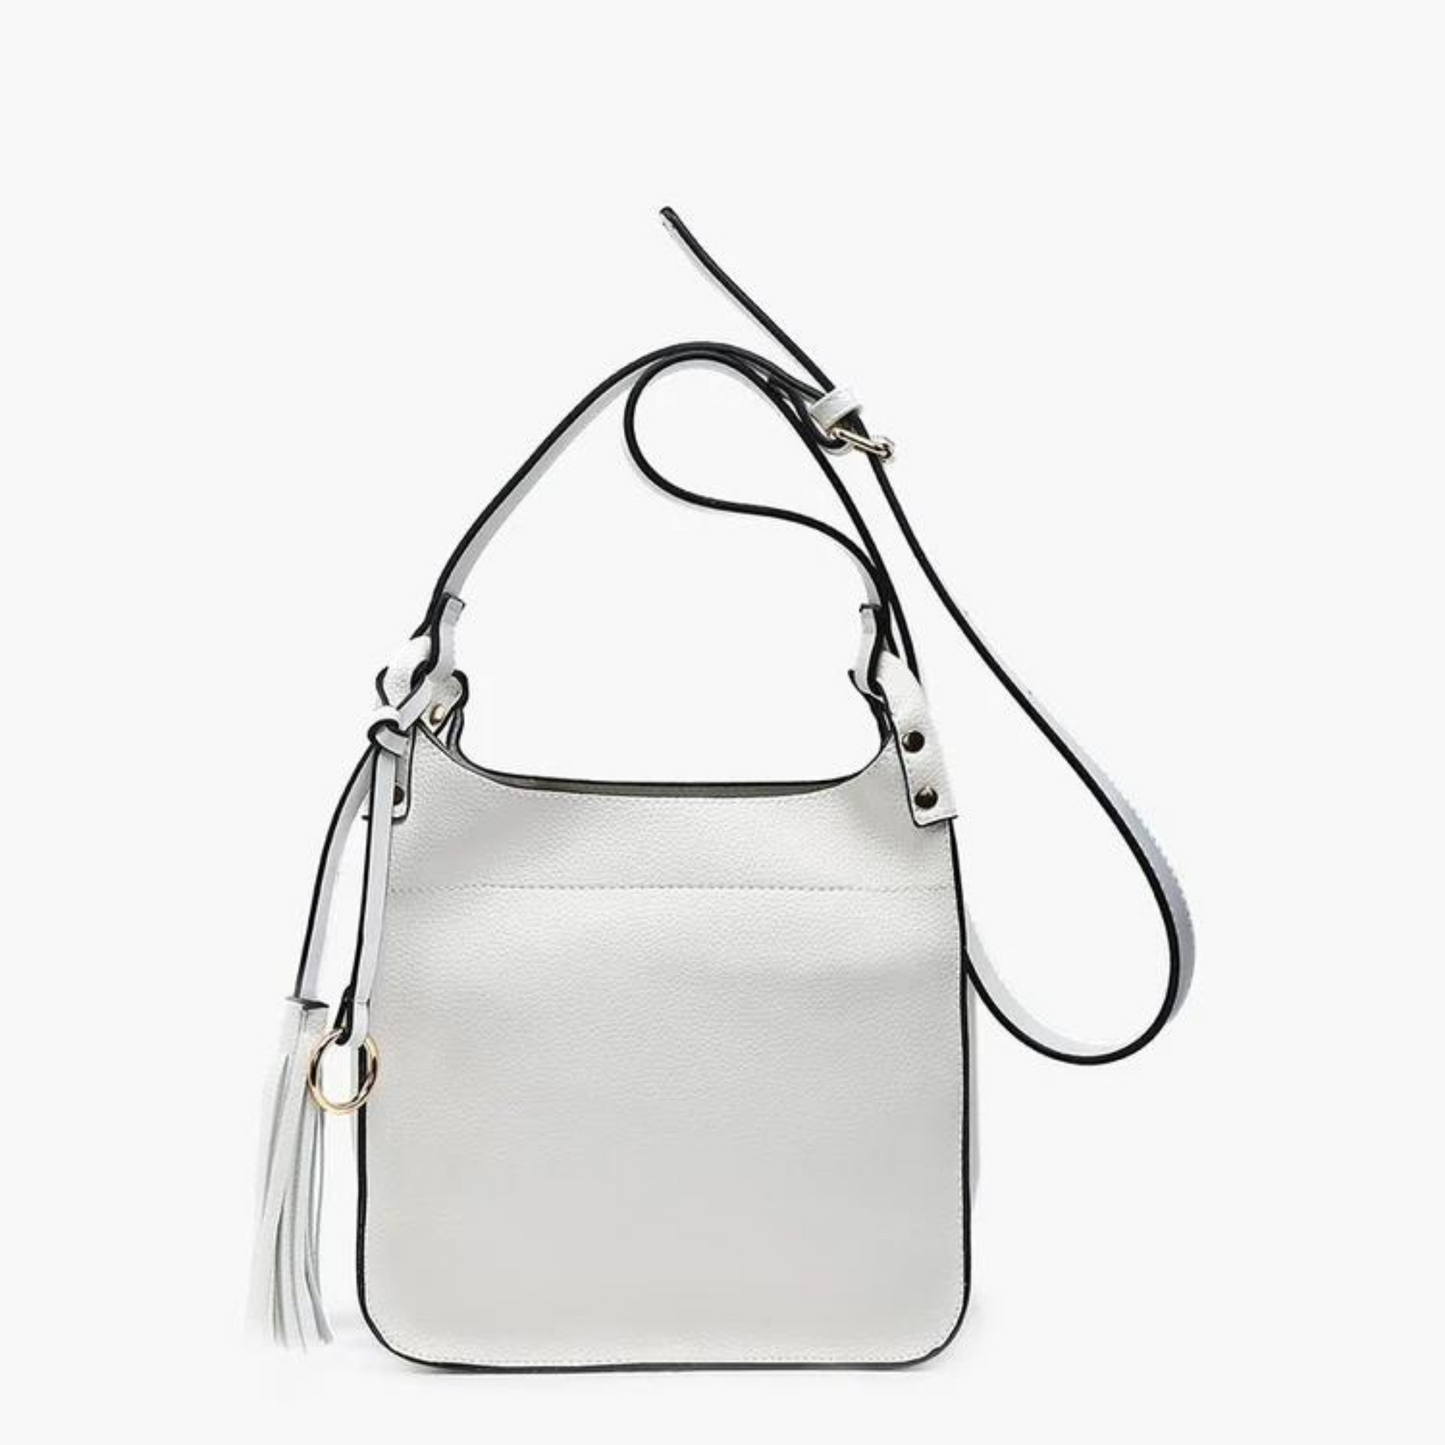 Lucinda square crossbody purse in white